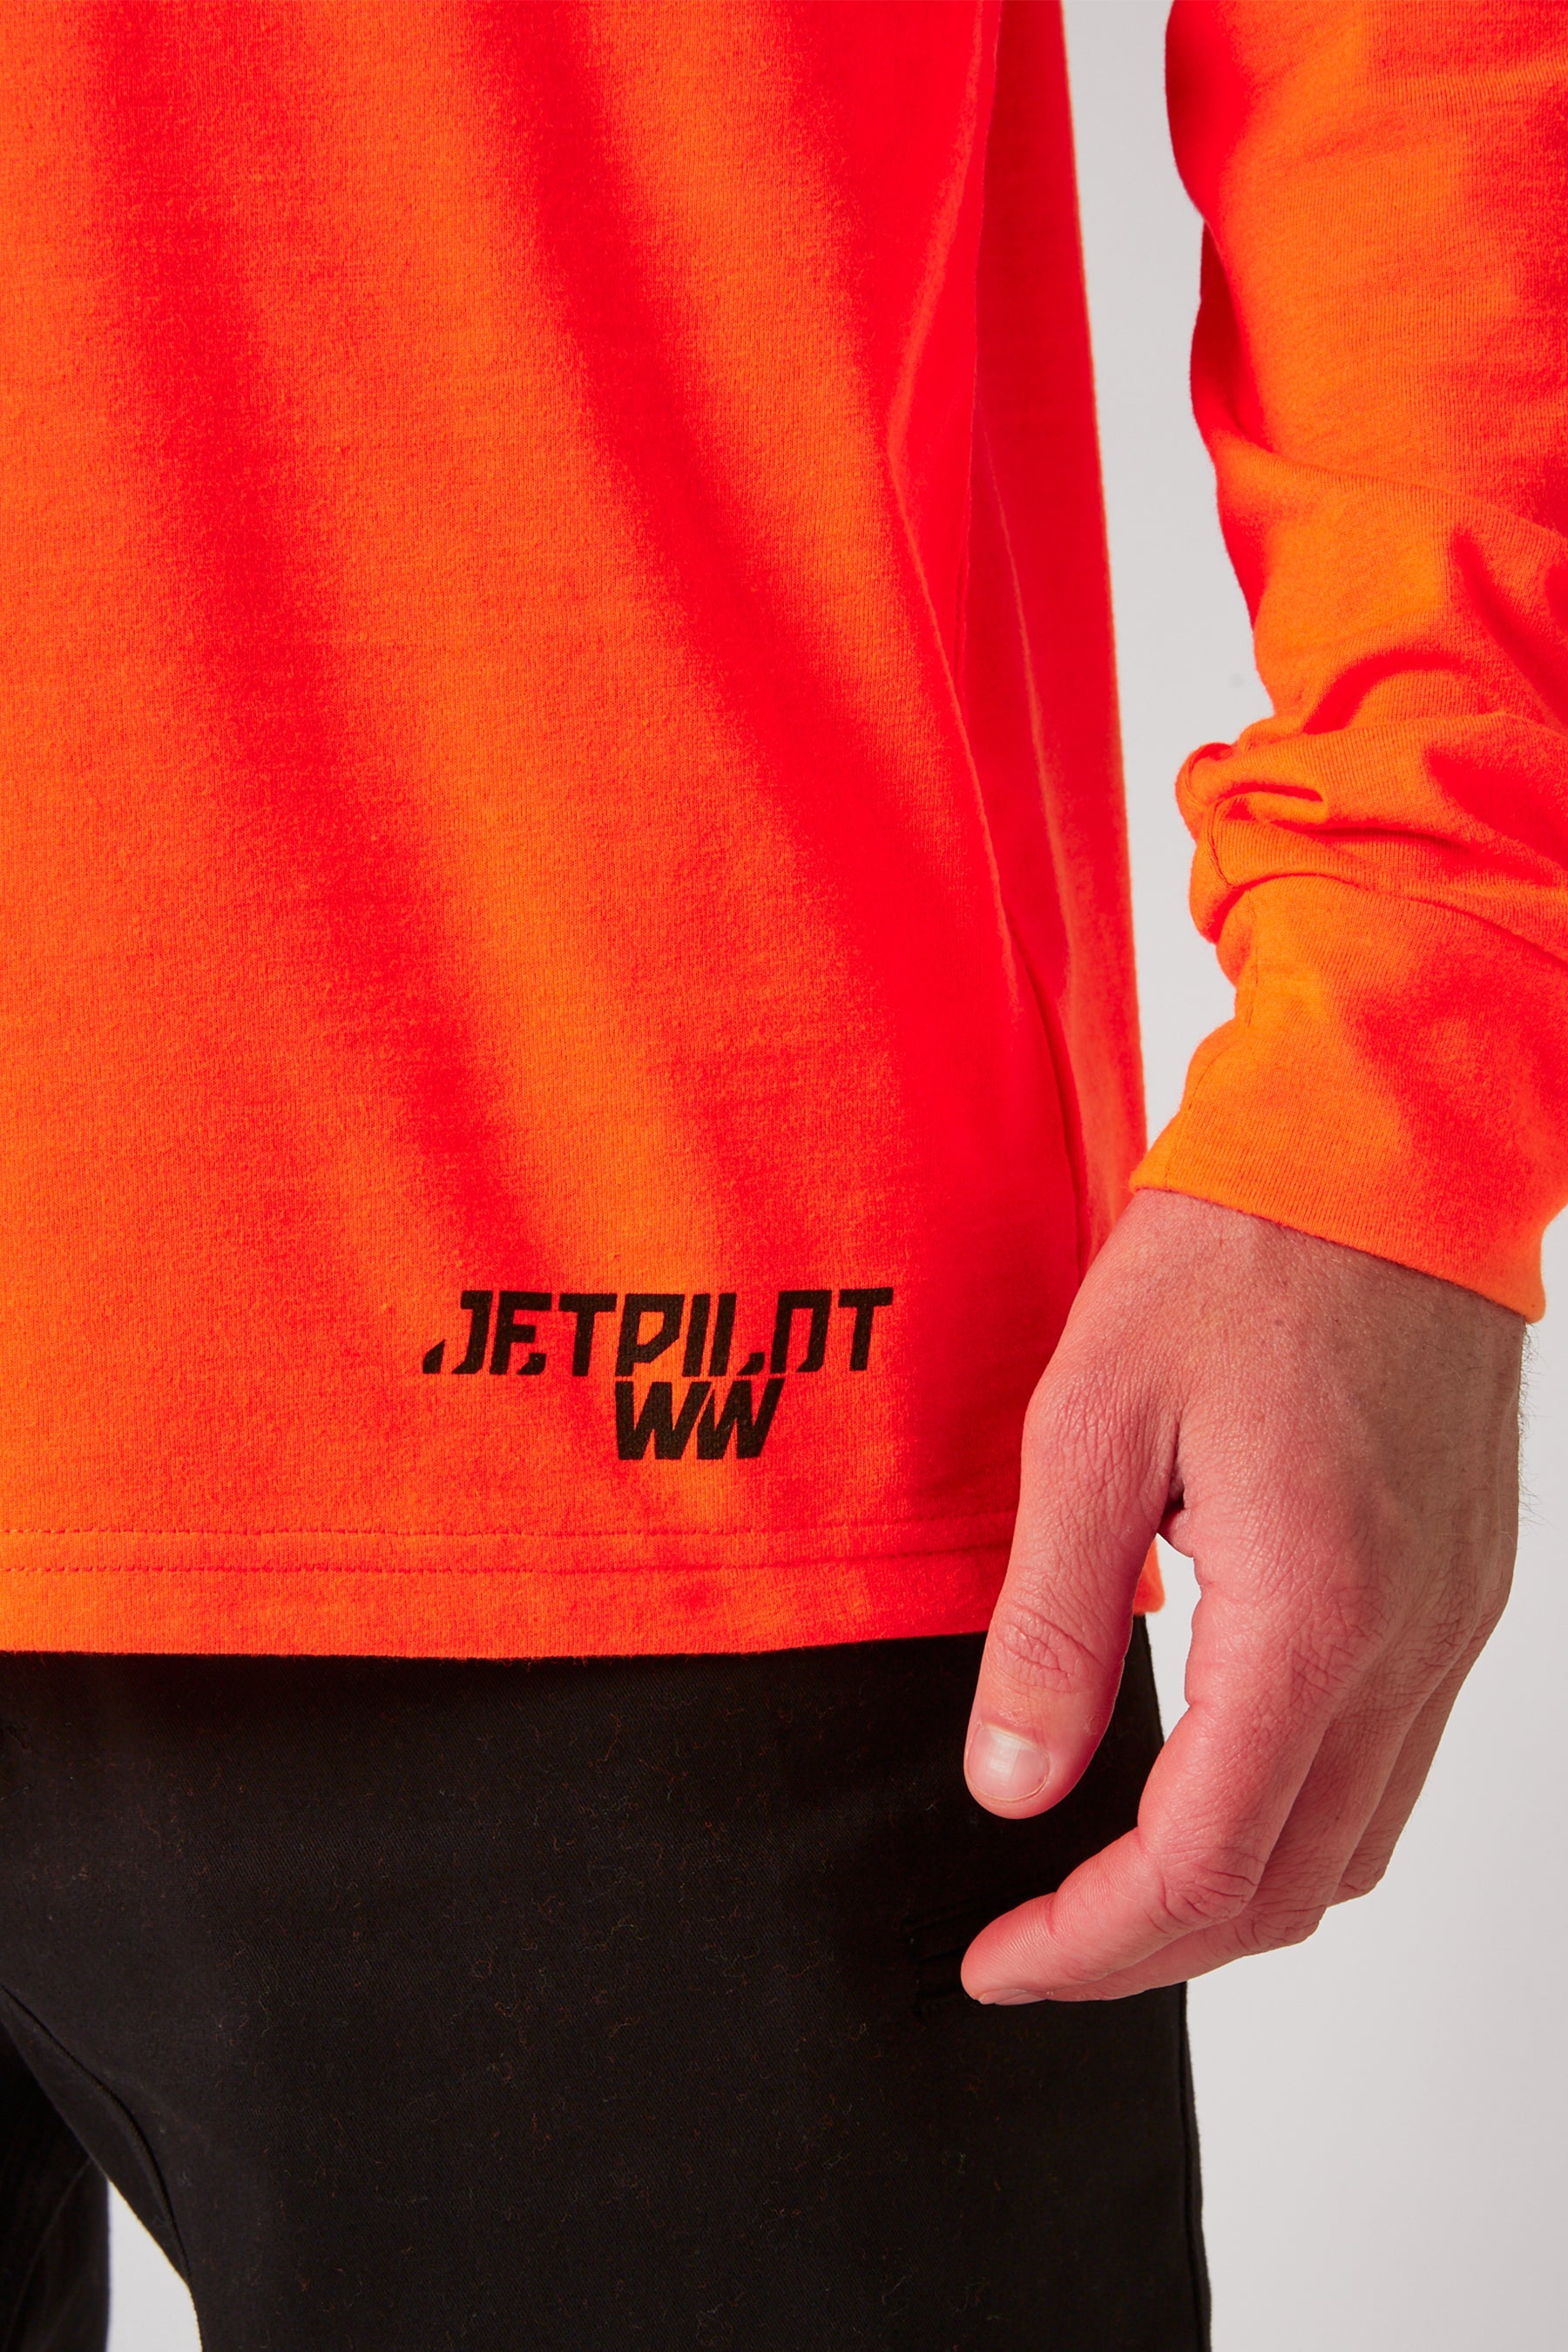 Jetpilot Low Hit Mens L/S Tee - Hi Vis Orange